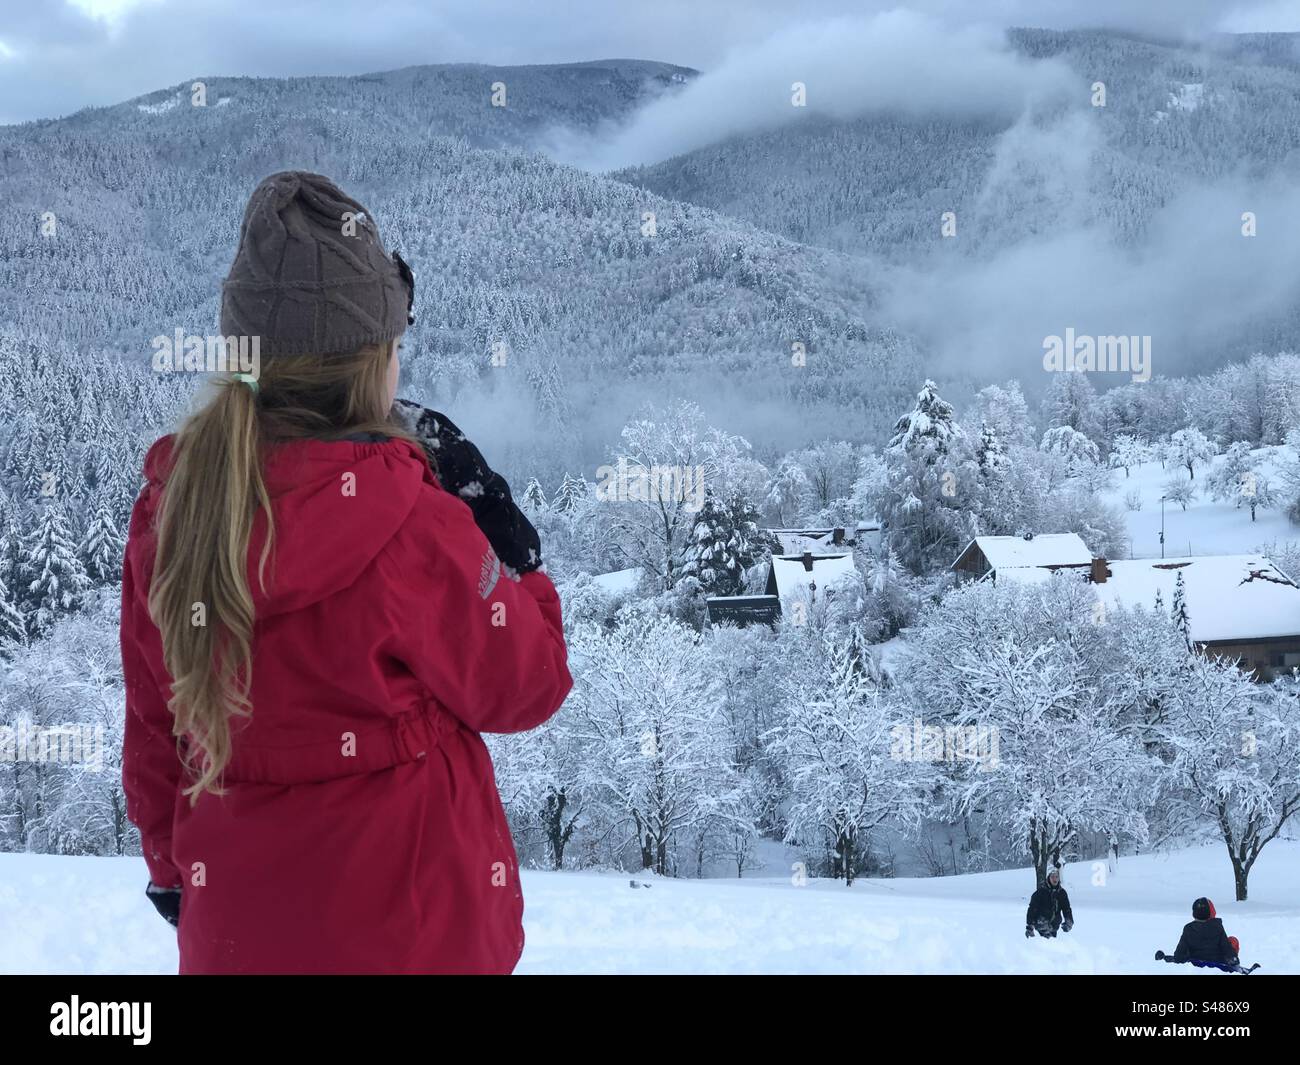 Una bambina vestita con un anorak rosso e un cappello di lana osserva un paesaggio di montagna innevato. In lontananza, altri due bambini scivolano sulla neve. Foto Stock